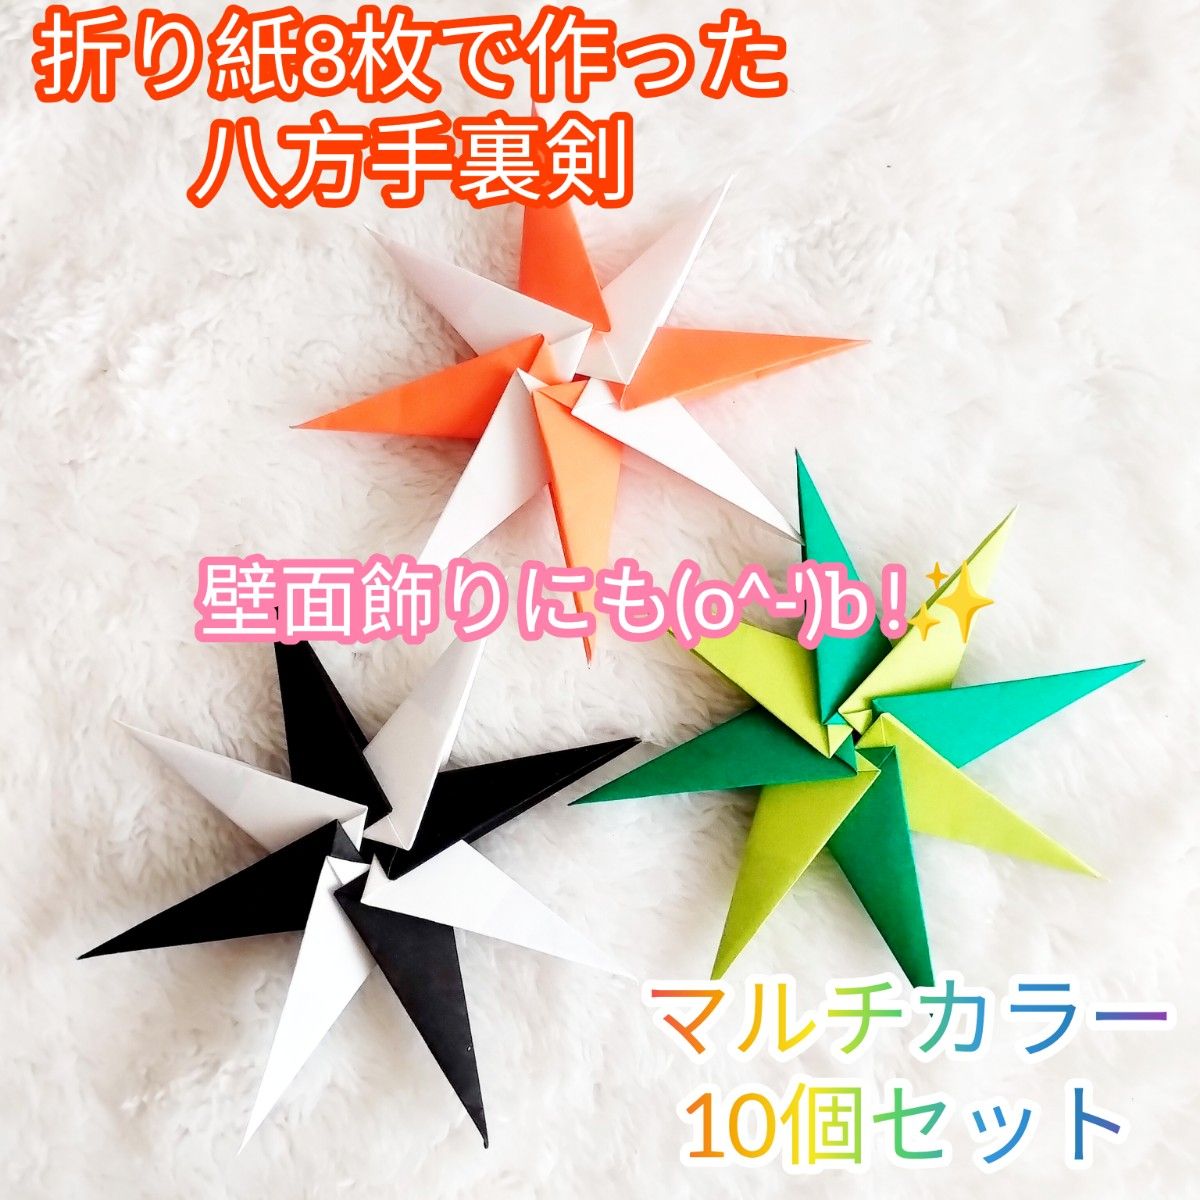 【ハンドメイド】折り紙☆八方手裏剣 パステルカラーver. 10個セット